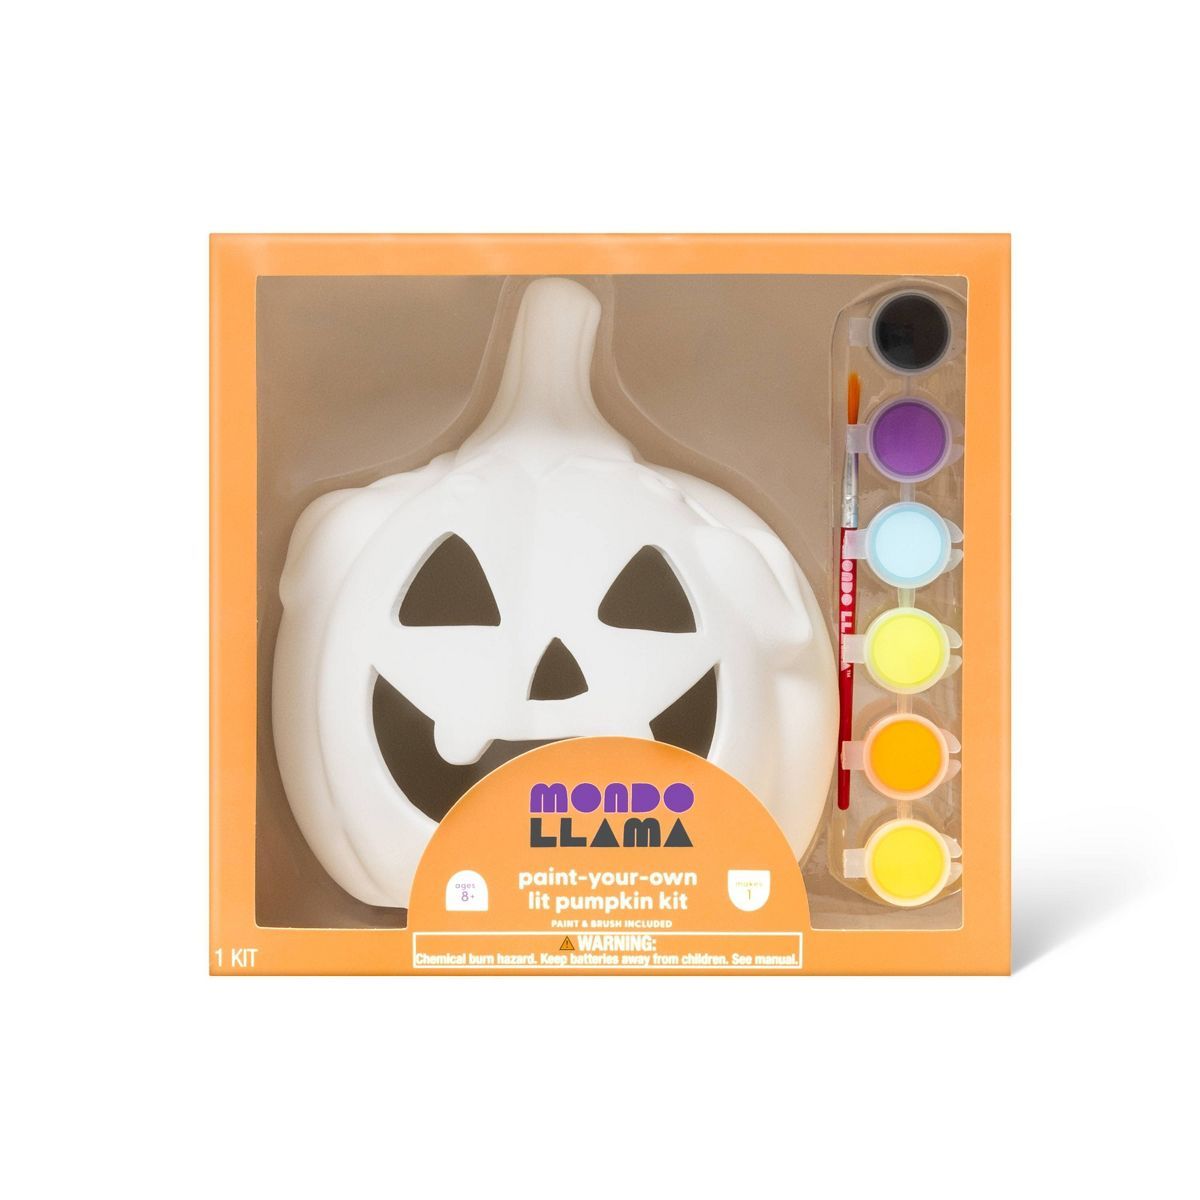 Halloween Lit Ceramic Jack O Lantern Kit - Mondo Llama™ | Target